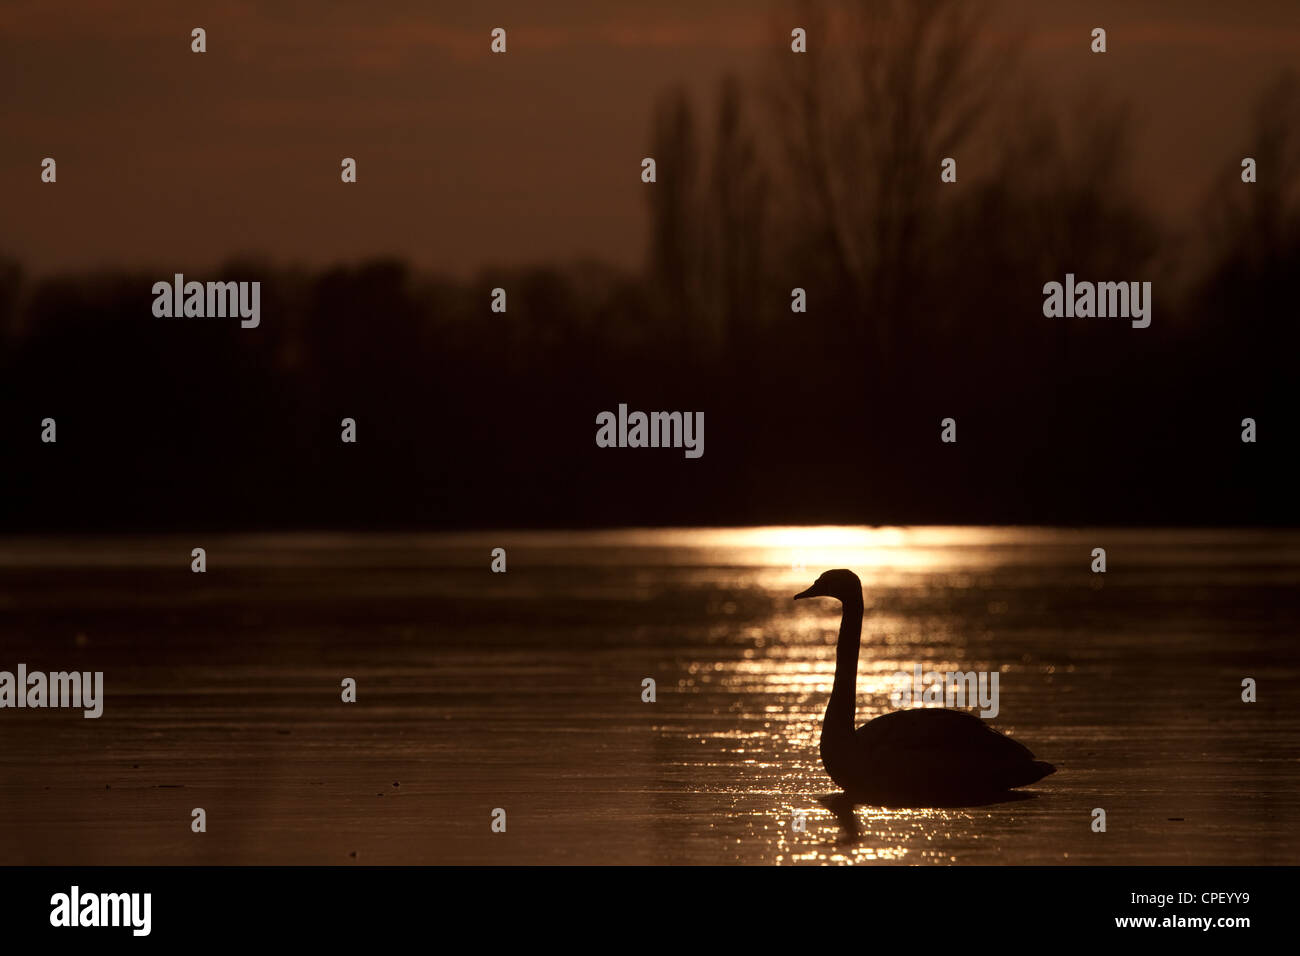 Cygne sur un lac gelé au coucher du soleil. Kraaijenbergse plassen, aux Pays-Bas. Banque D'Images